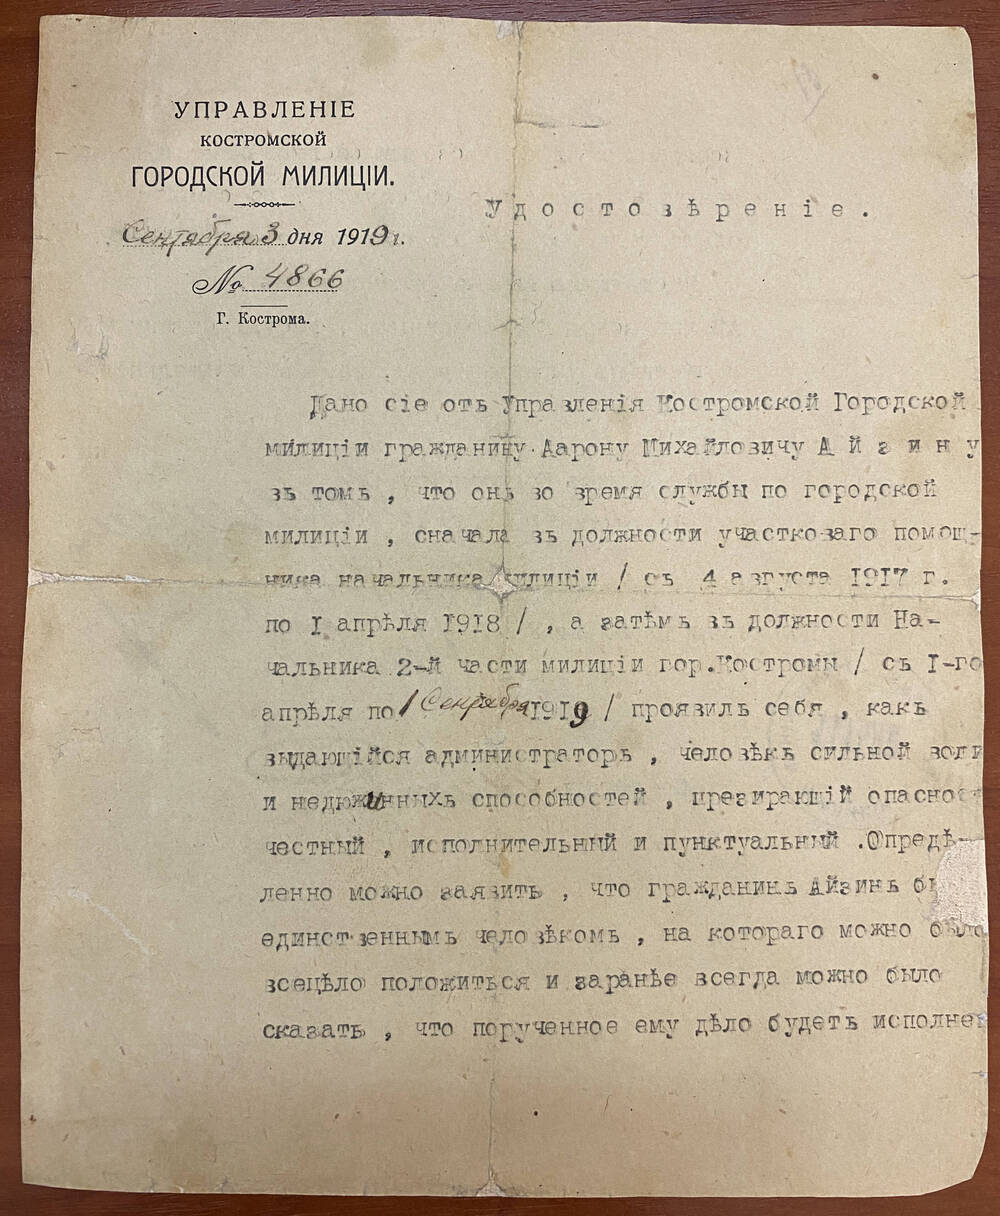 Характеристика № 4866 от 03.09.1919 г. на Айзина А.М. Четыре подписи, печать